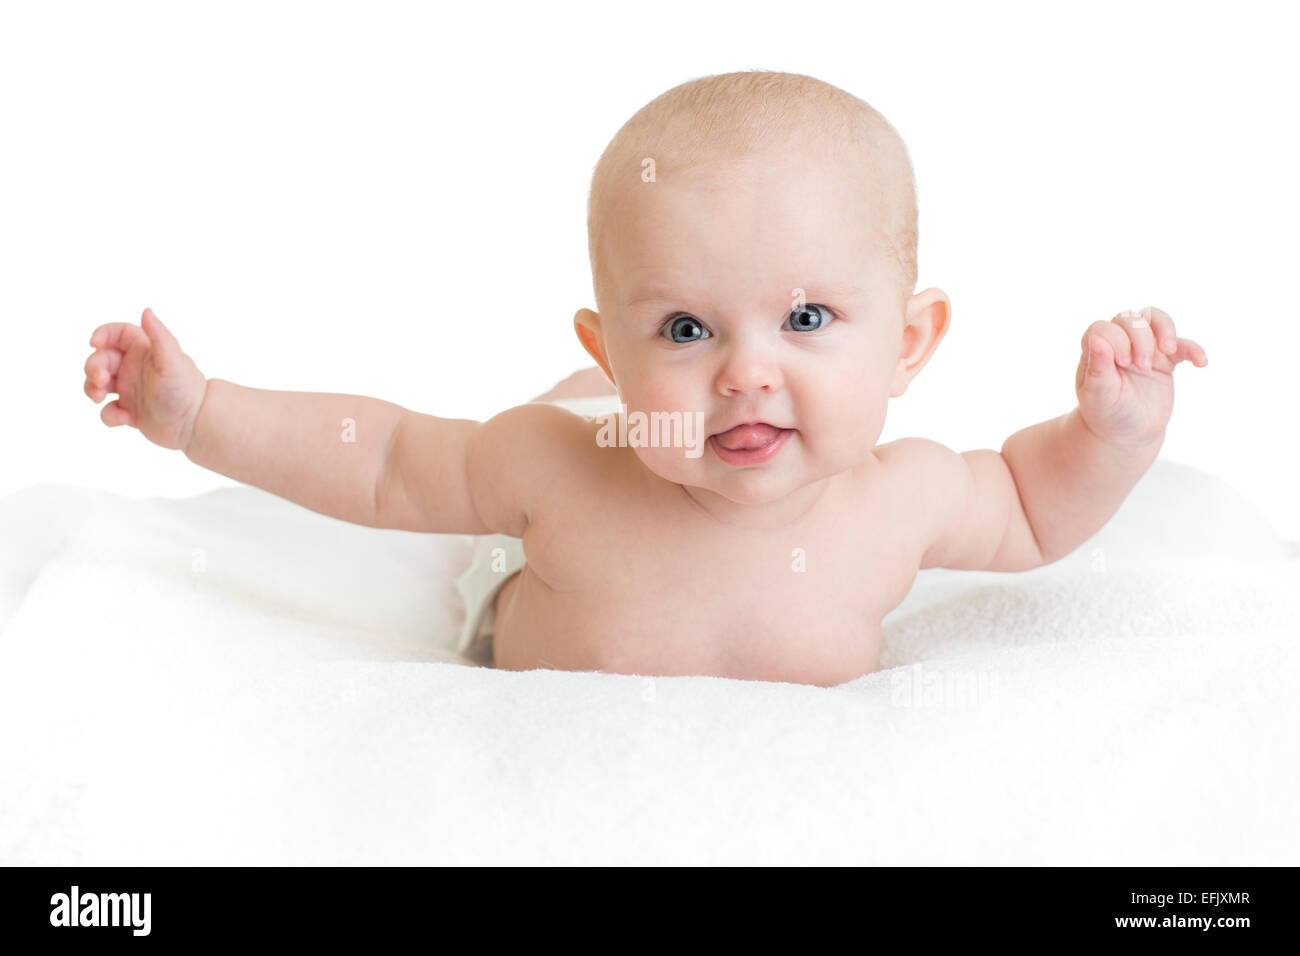 Carino il bambino sano giacente su asciugamano bianco con le mani in alto Foto Stock